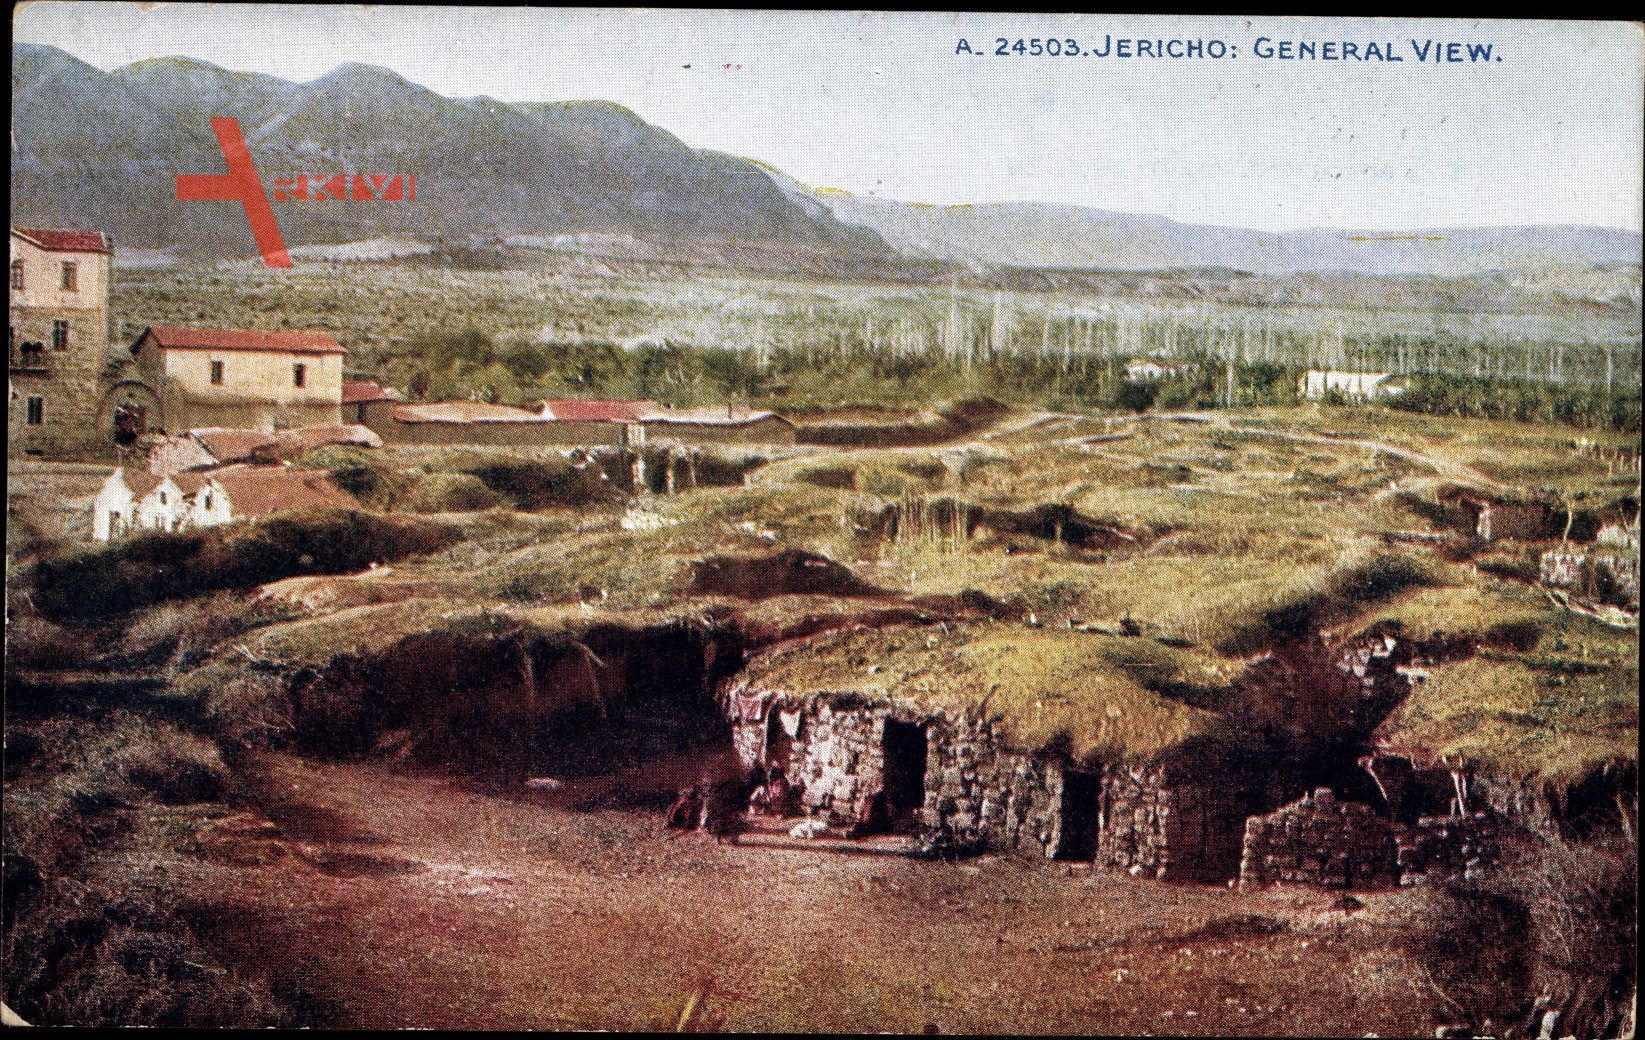 Jericho Palästina, General view, Blick auf den Ort, Berge, Hütten